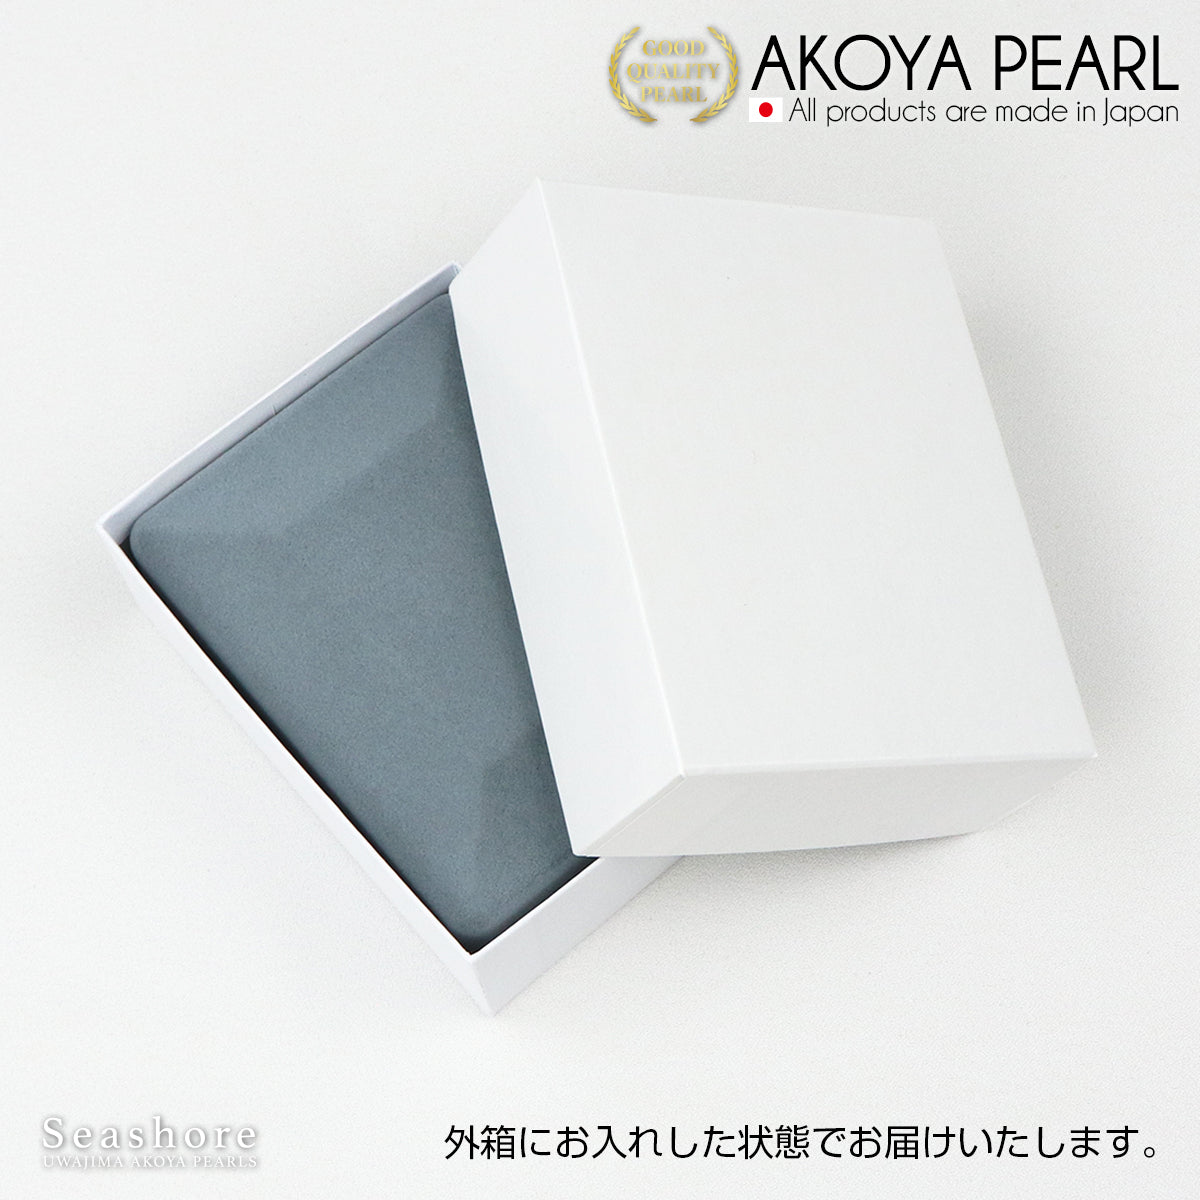 胸针盒紧凑型仿丝绒面料珍珠盒灰色 (1.0.745.8)